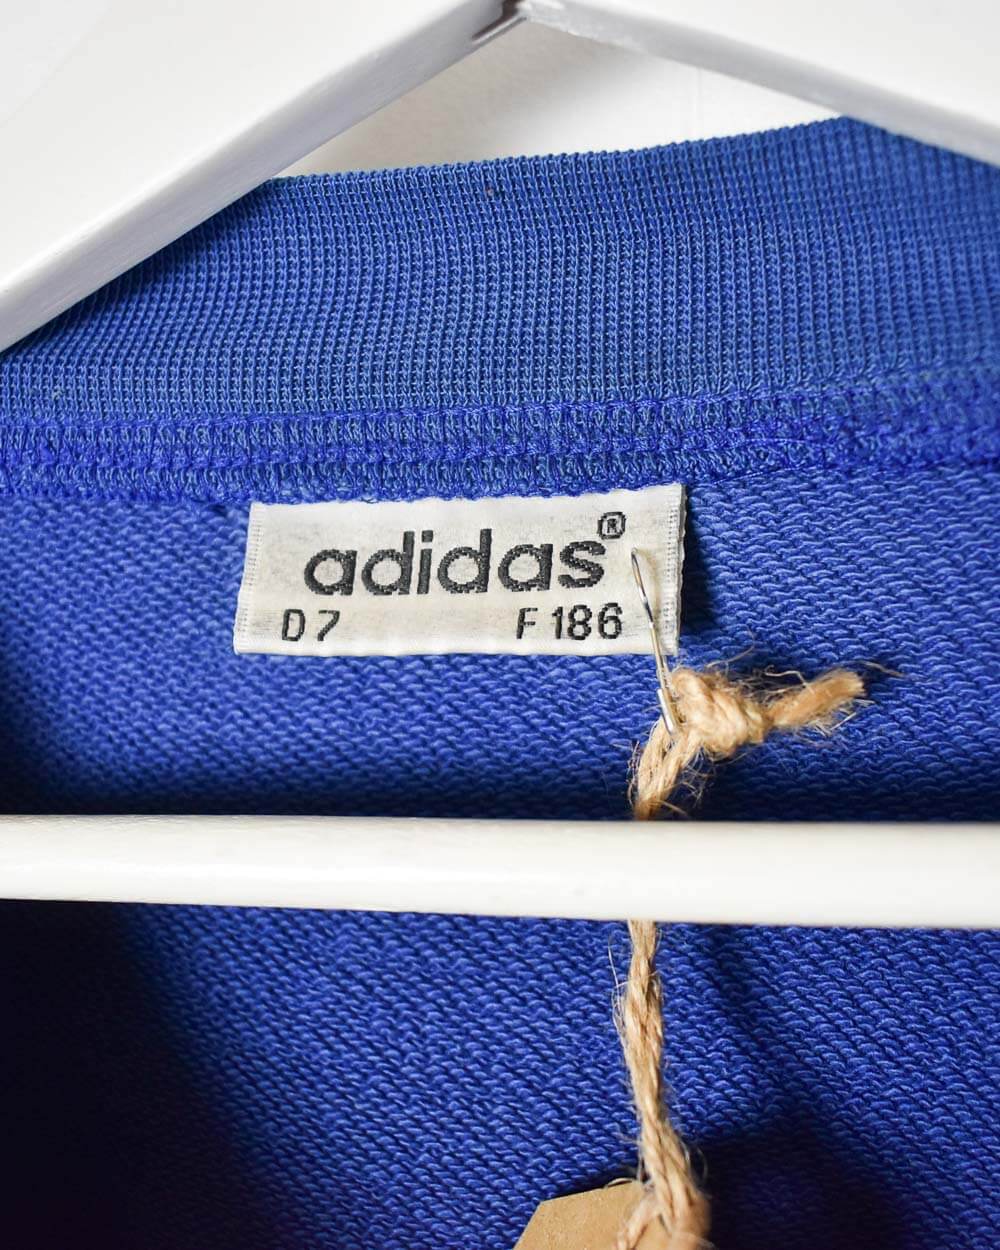 Blue Adidas 90s FC Bayern Munich Sweatshirt - Large